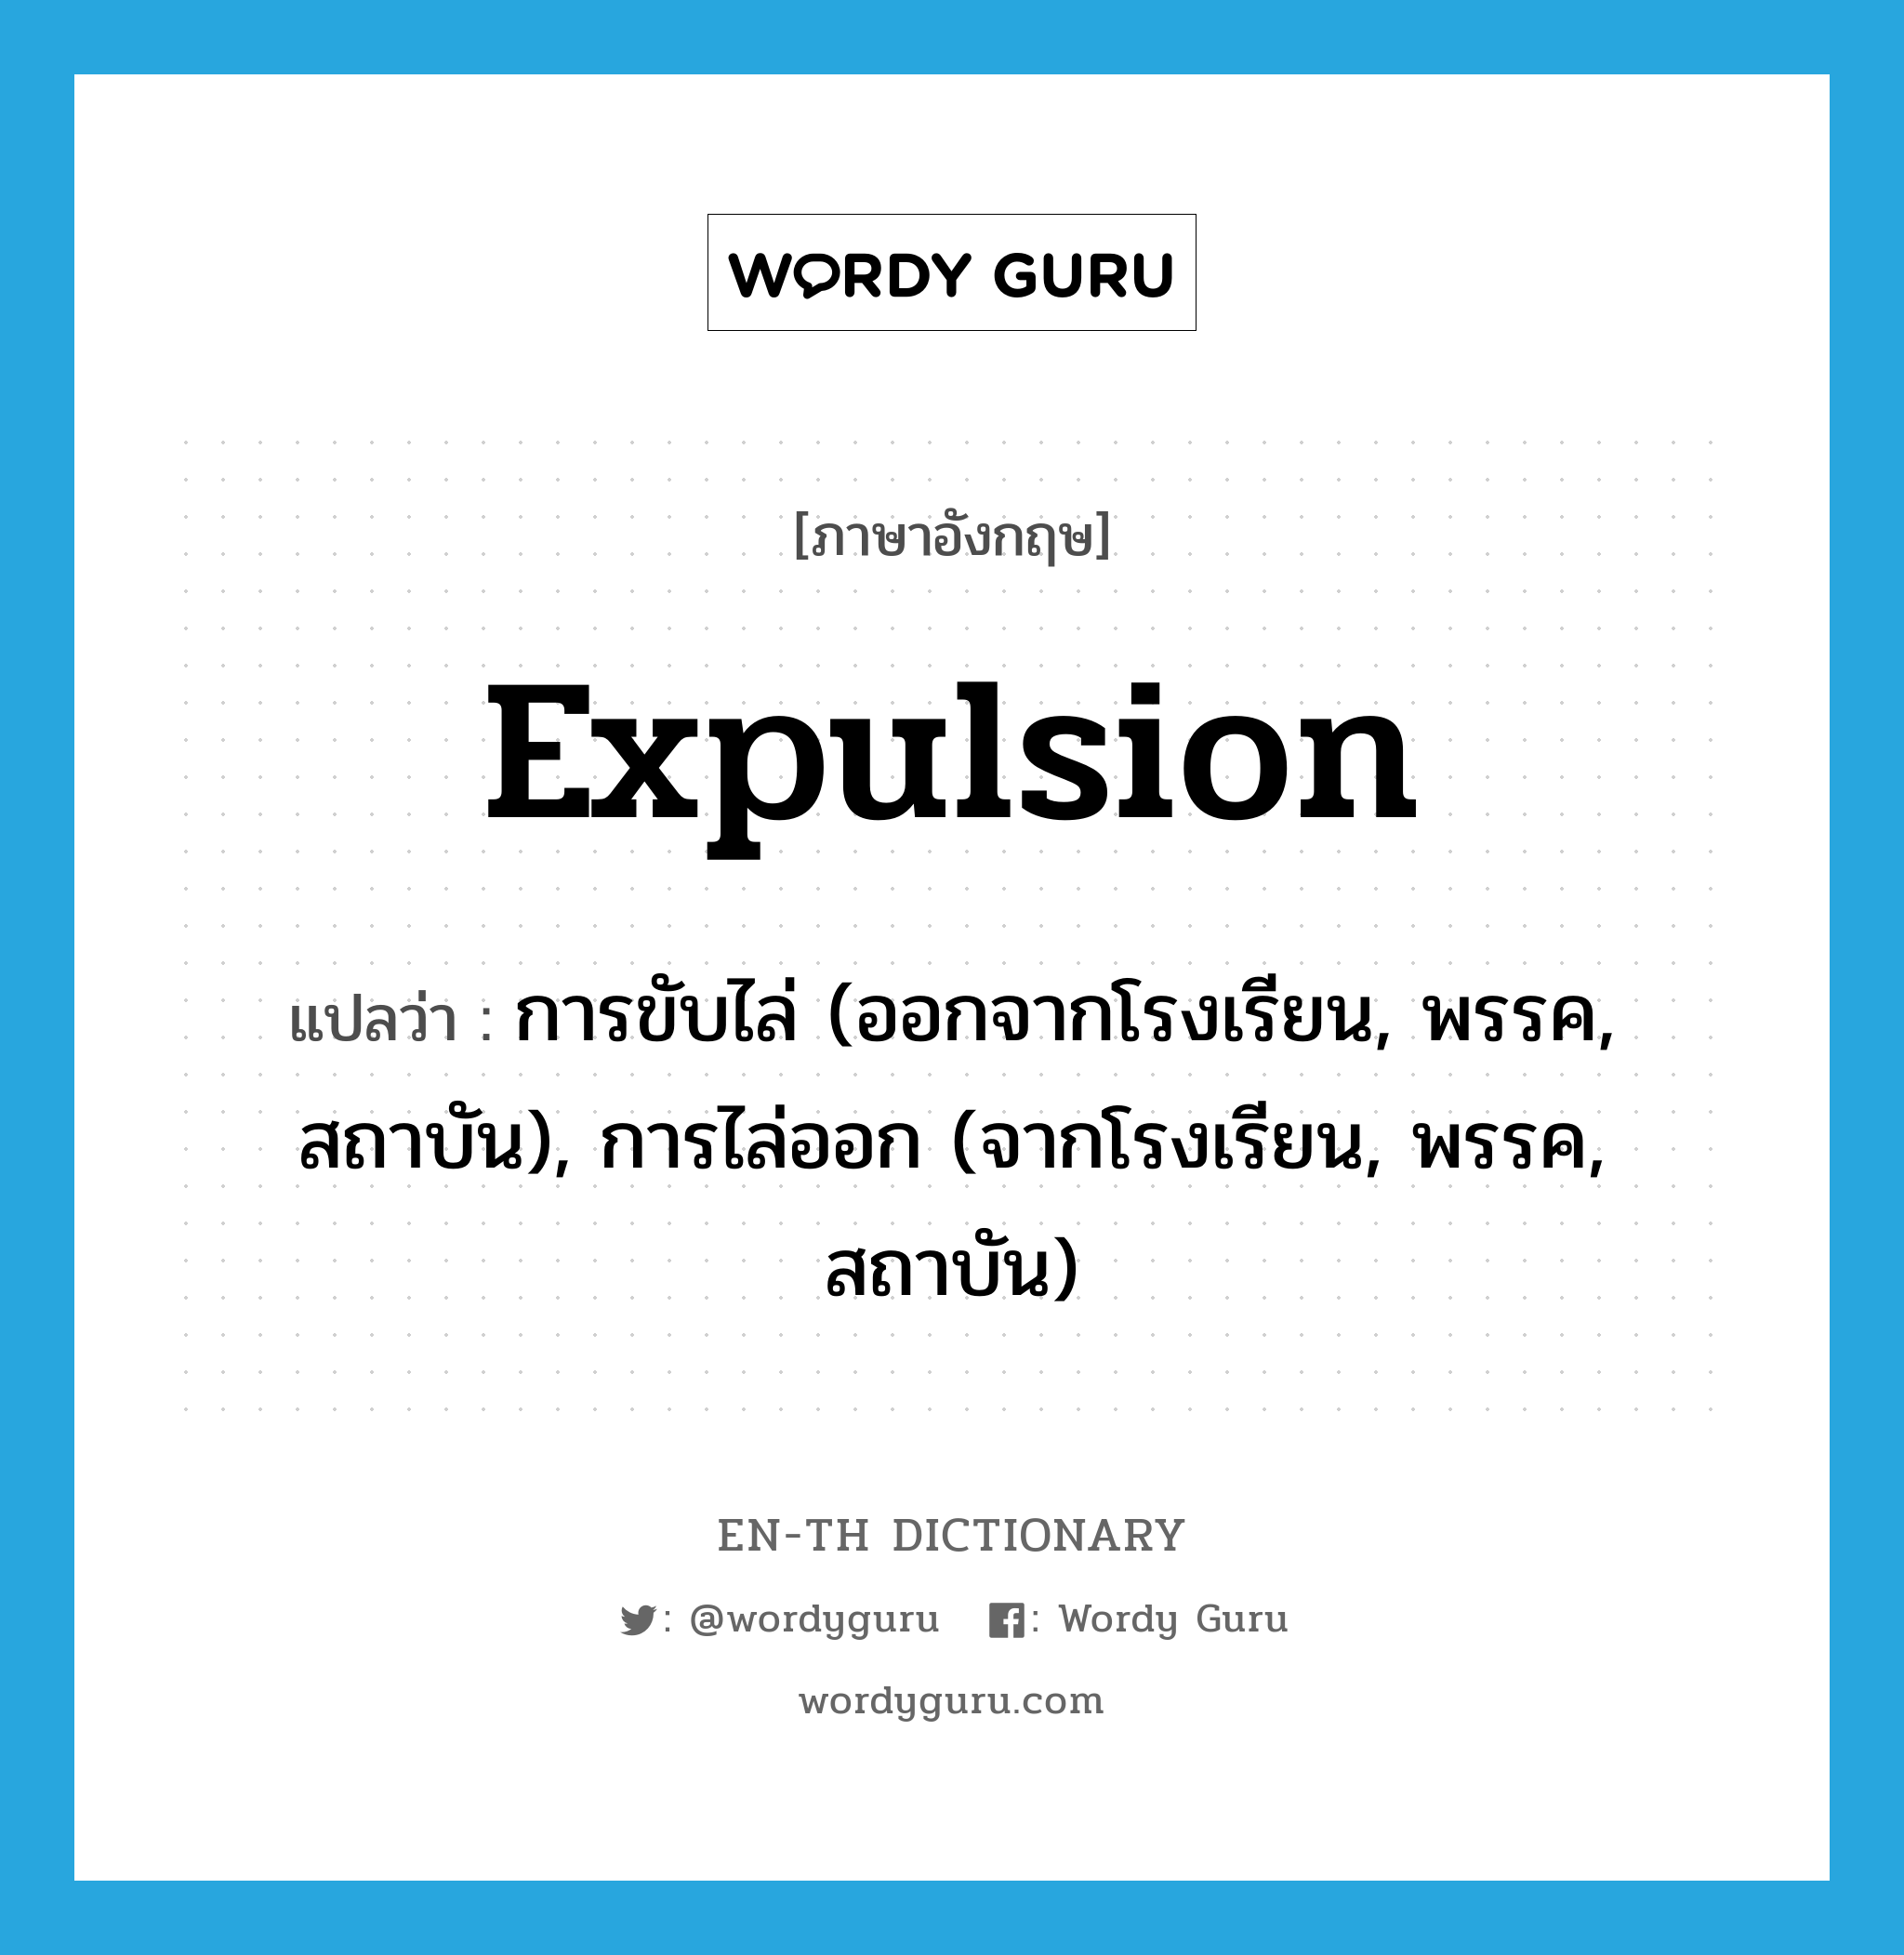 expulsion แปลว่า?, คำศัพท์ภาษาอังกฤษ expulsion แปลว่า การขับไล่ (ออกจากโรงเรียน, พรรค, สถาบัน), การไล่ออก (จากโรงเรียน, พรรค, สถาบัน) ประเภท N หมวด N